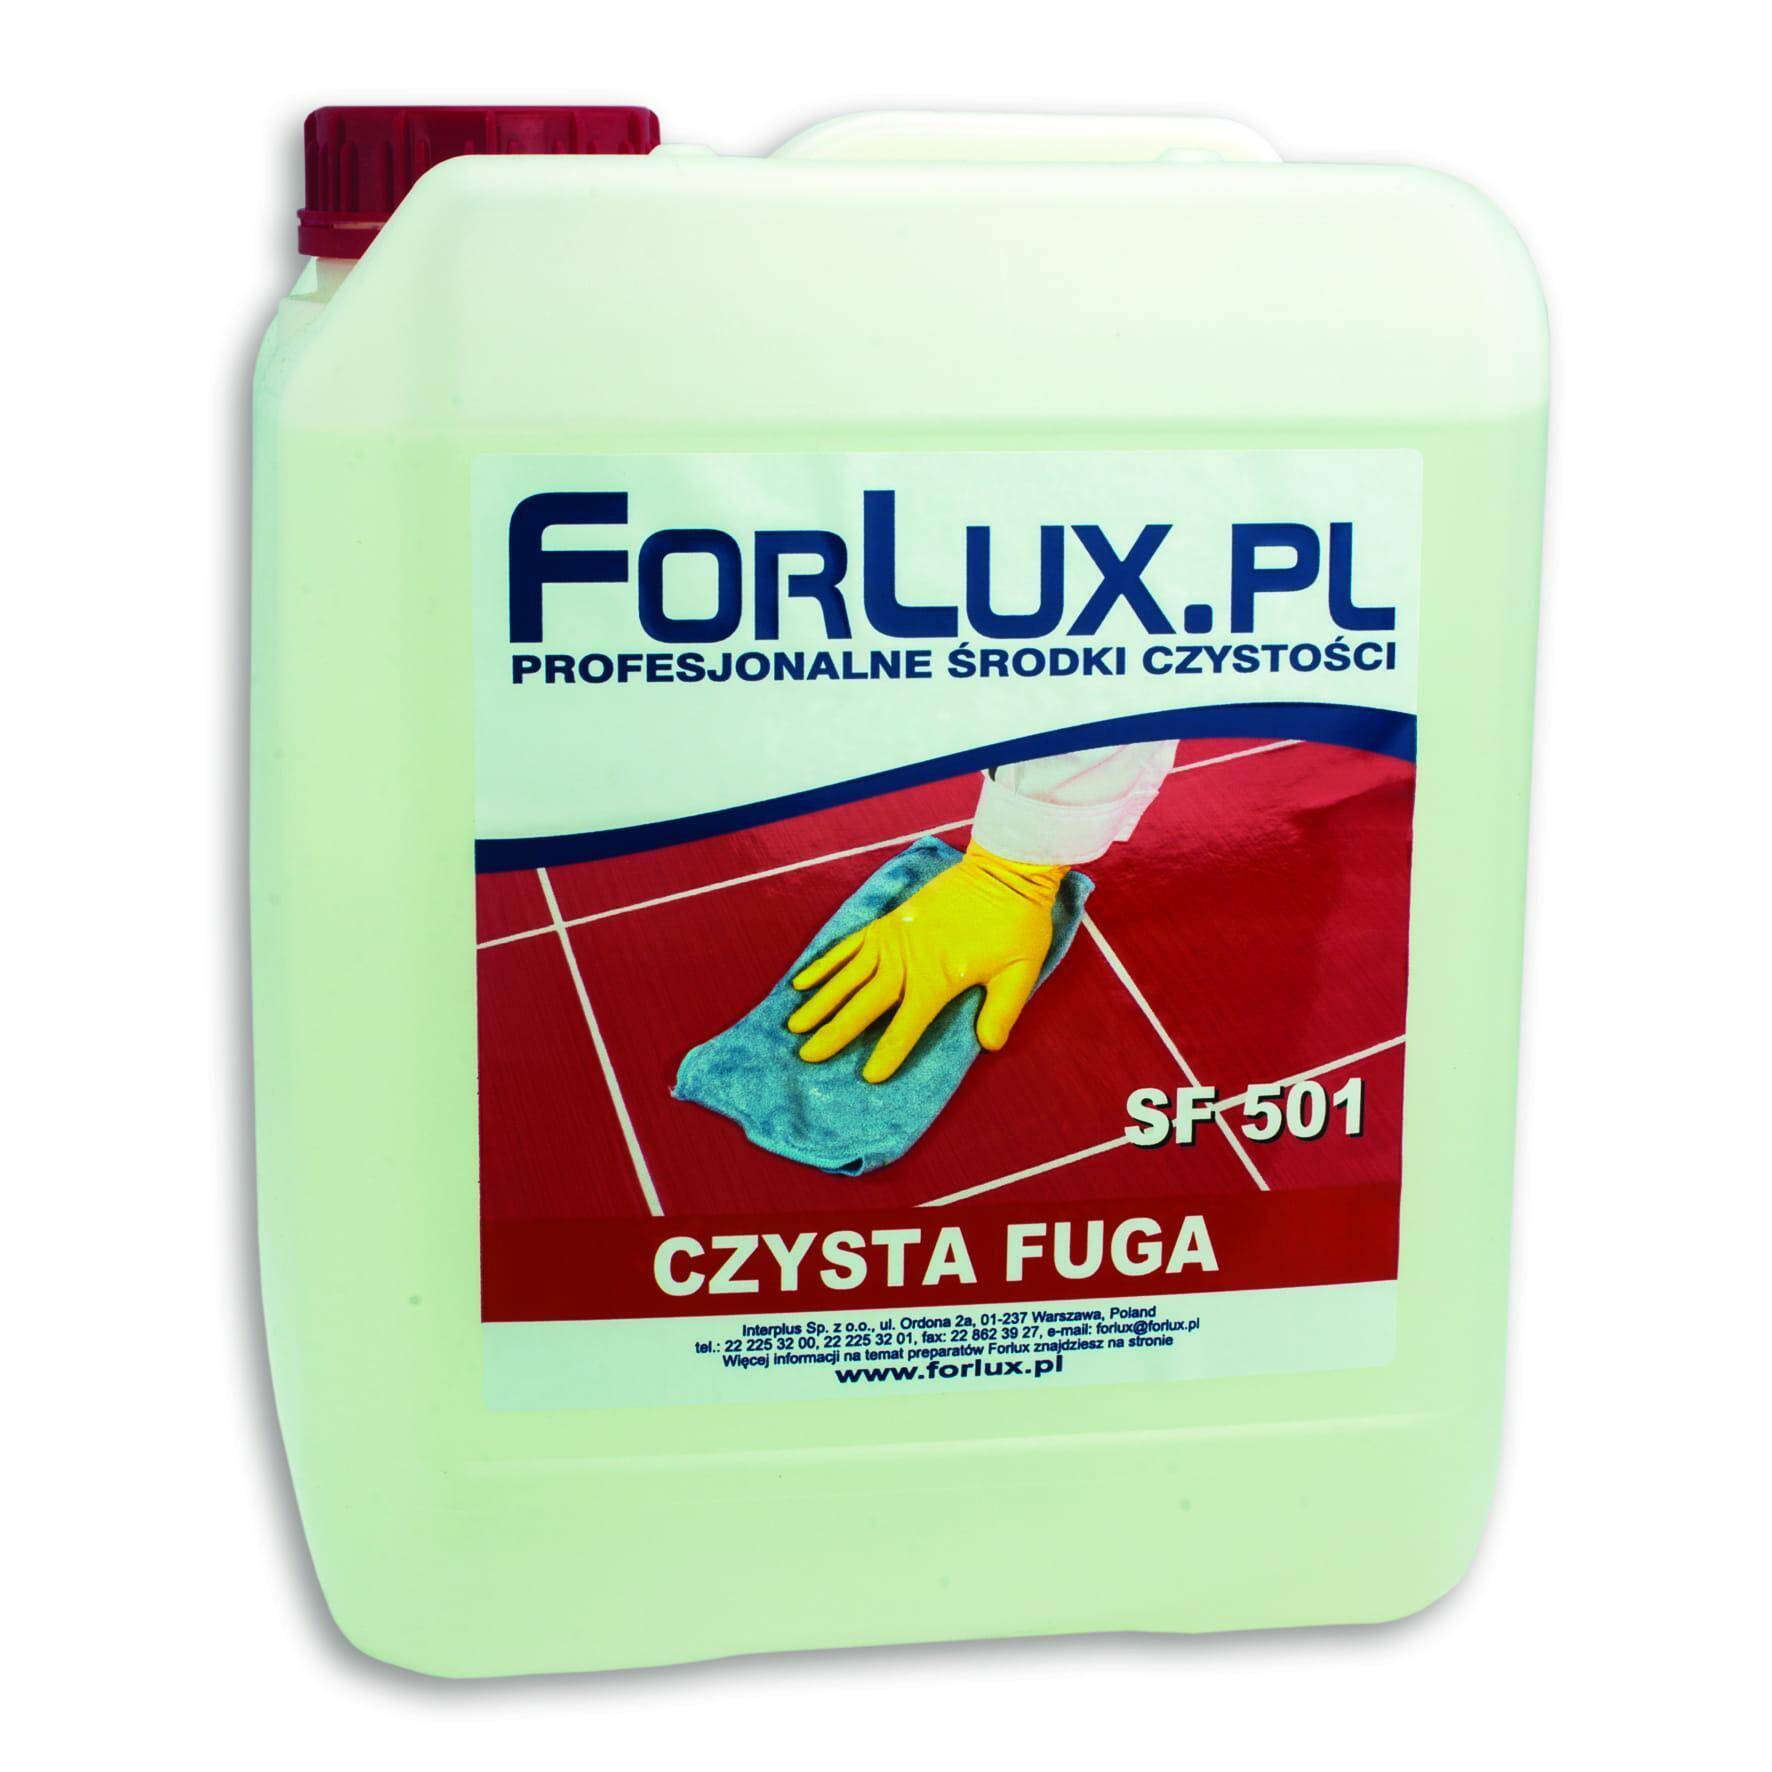 FORLUX czysta fuga 5L